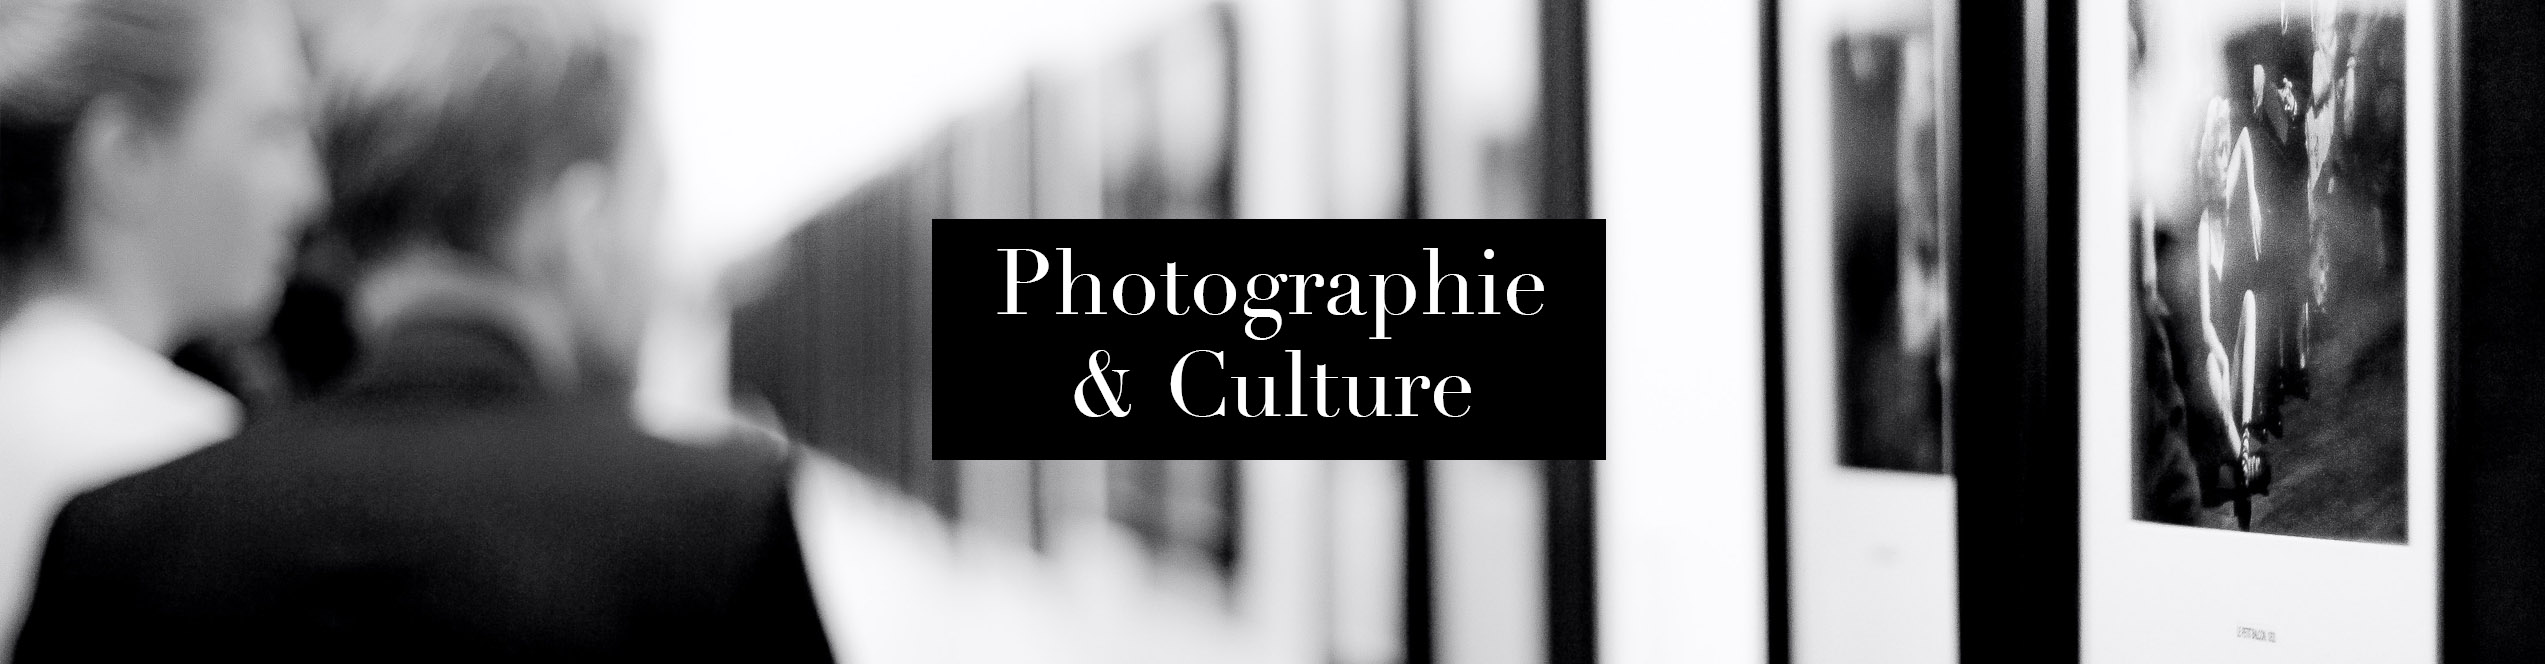 Rubrique Univers Photographie & Culture